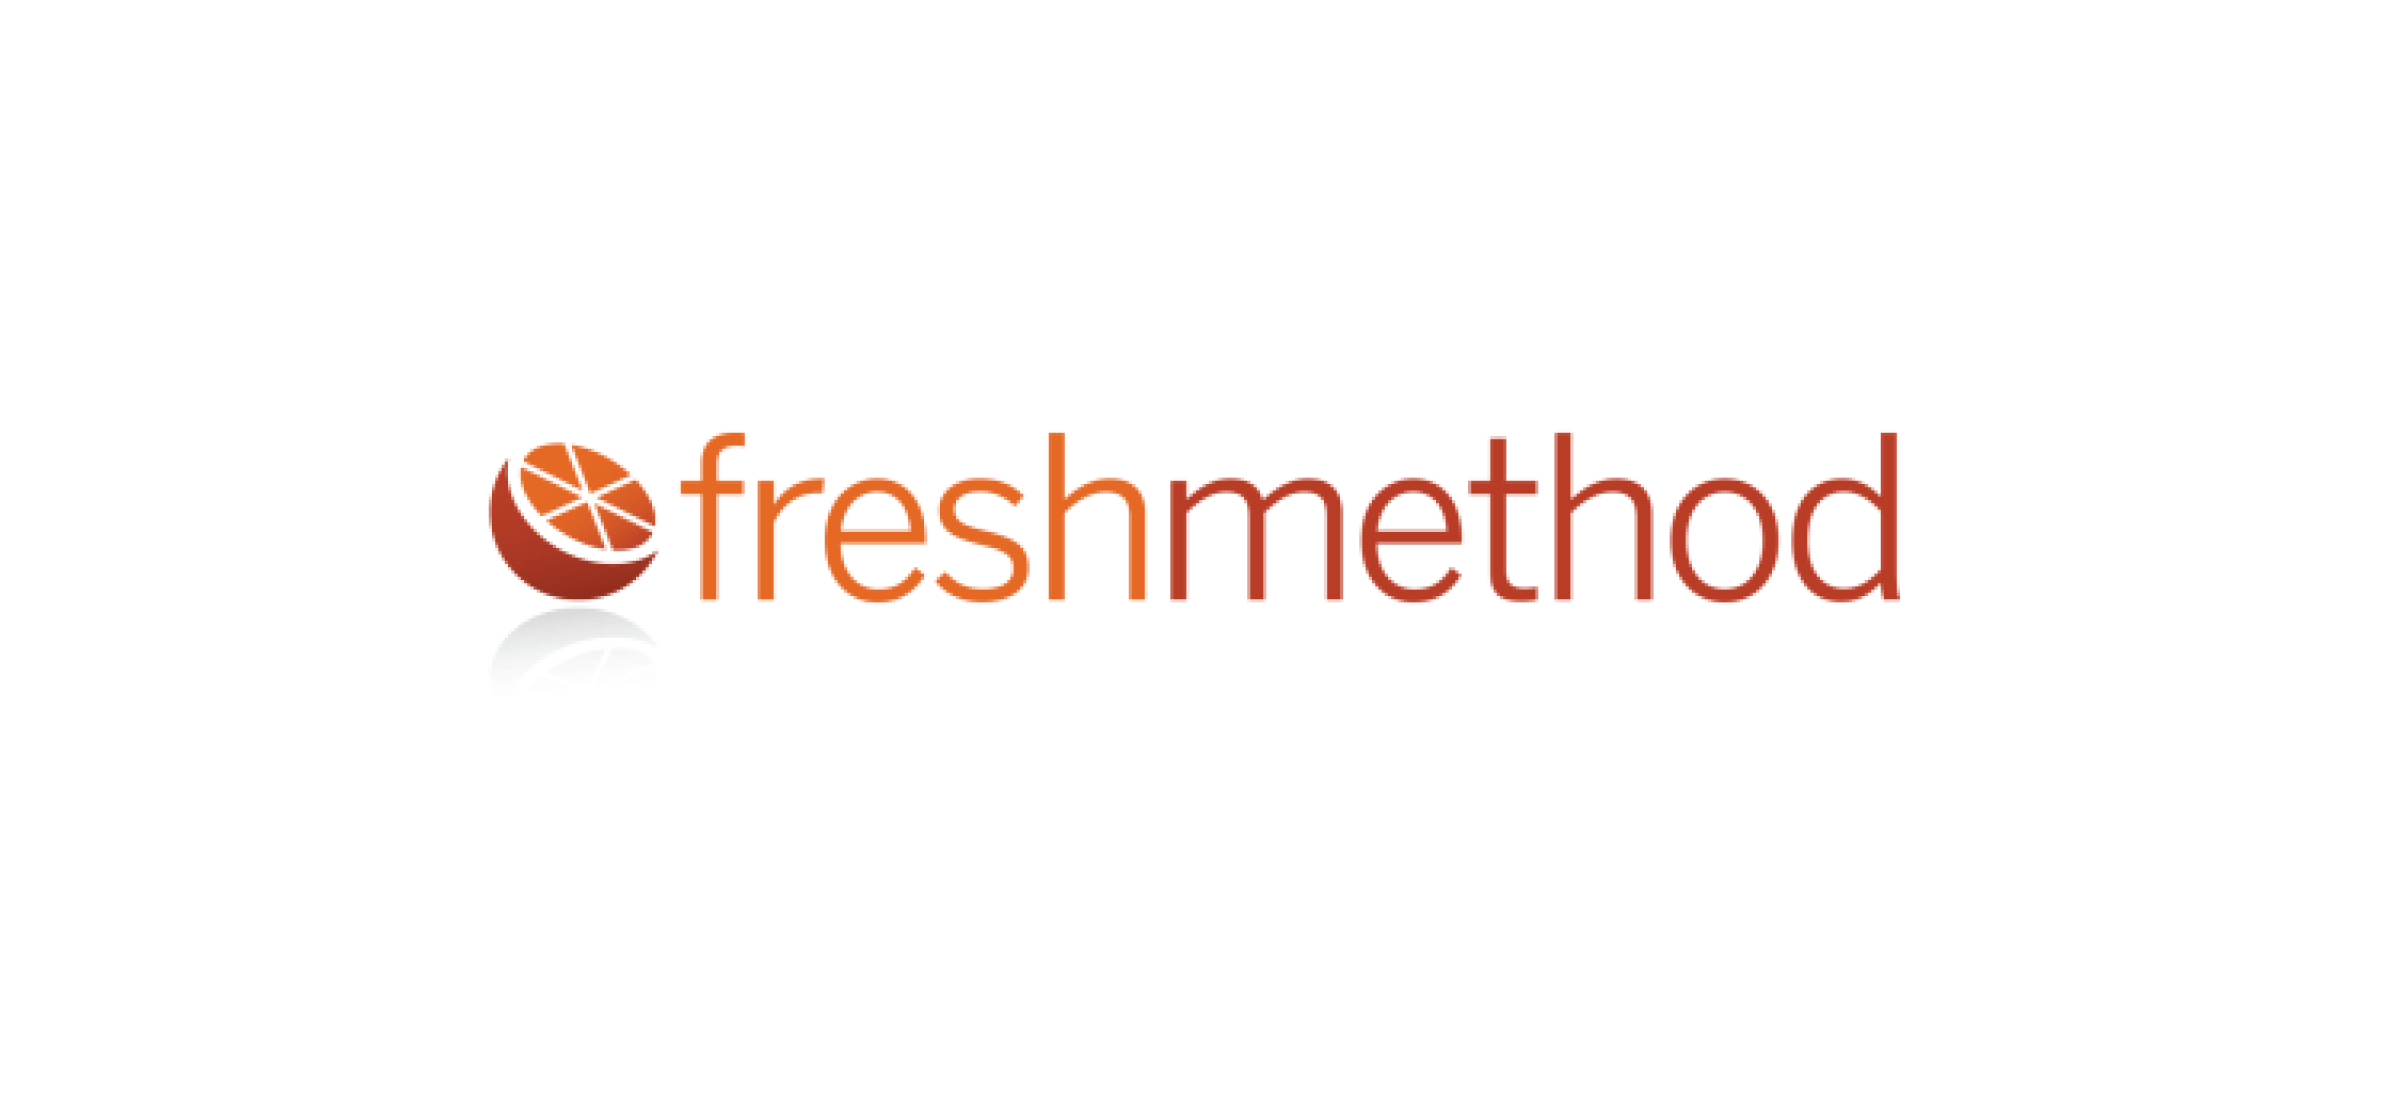 The Freshmethod logo